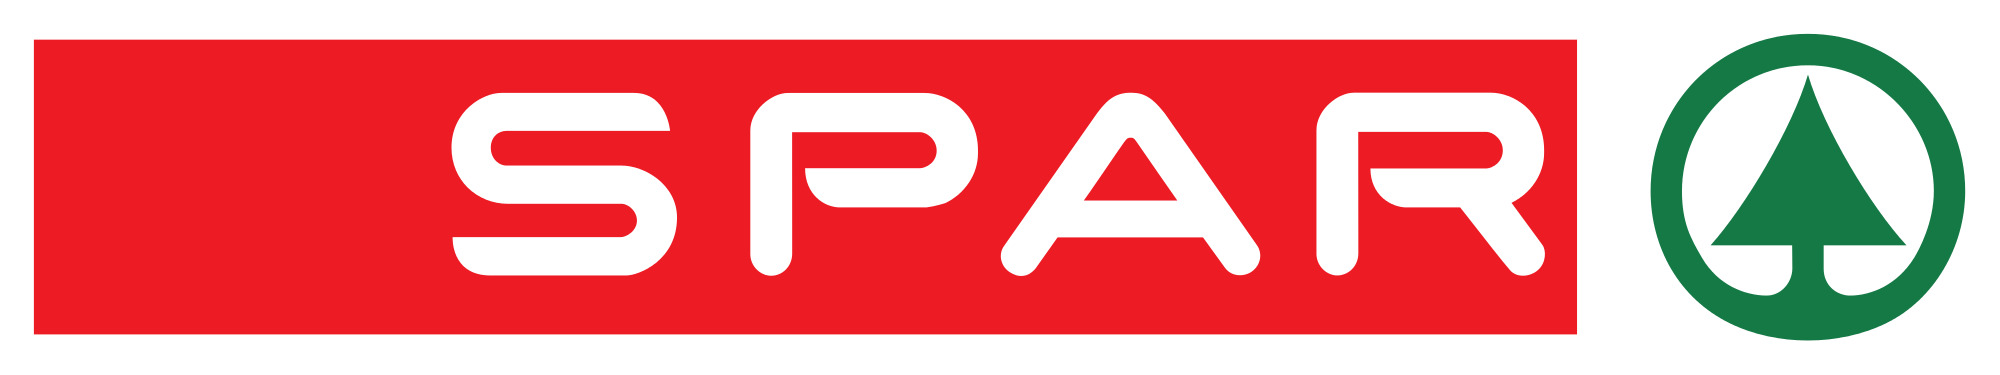 Spar Logo icons